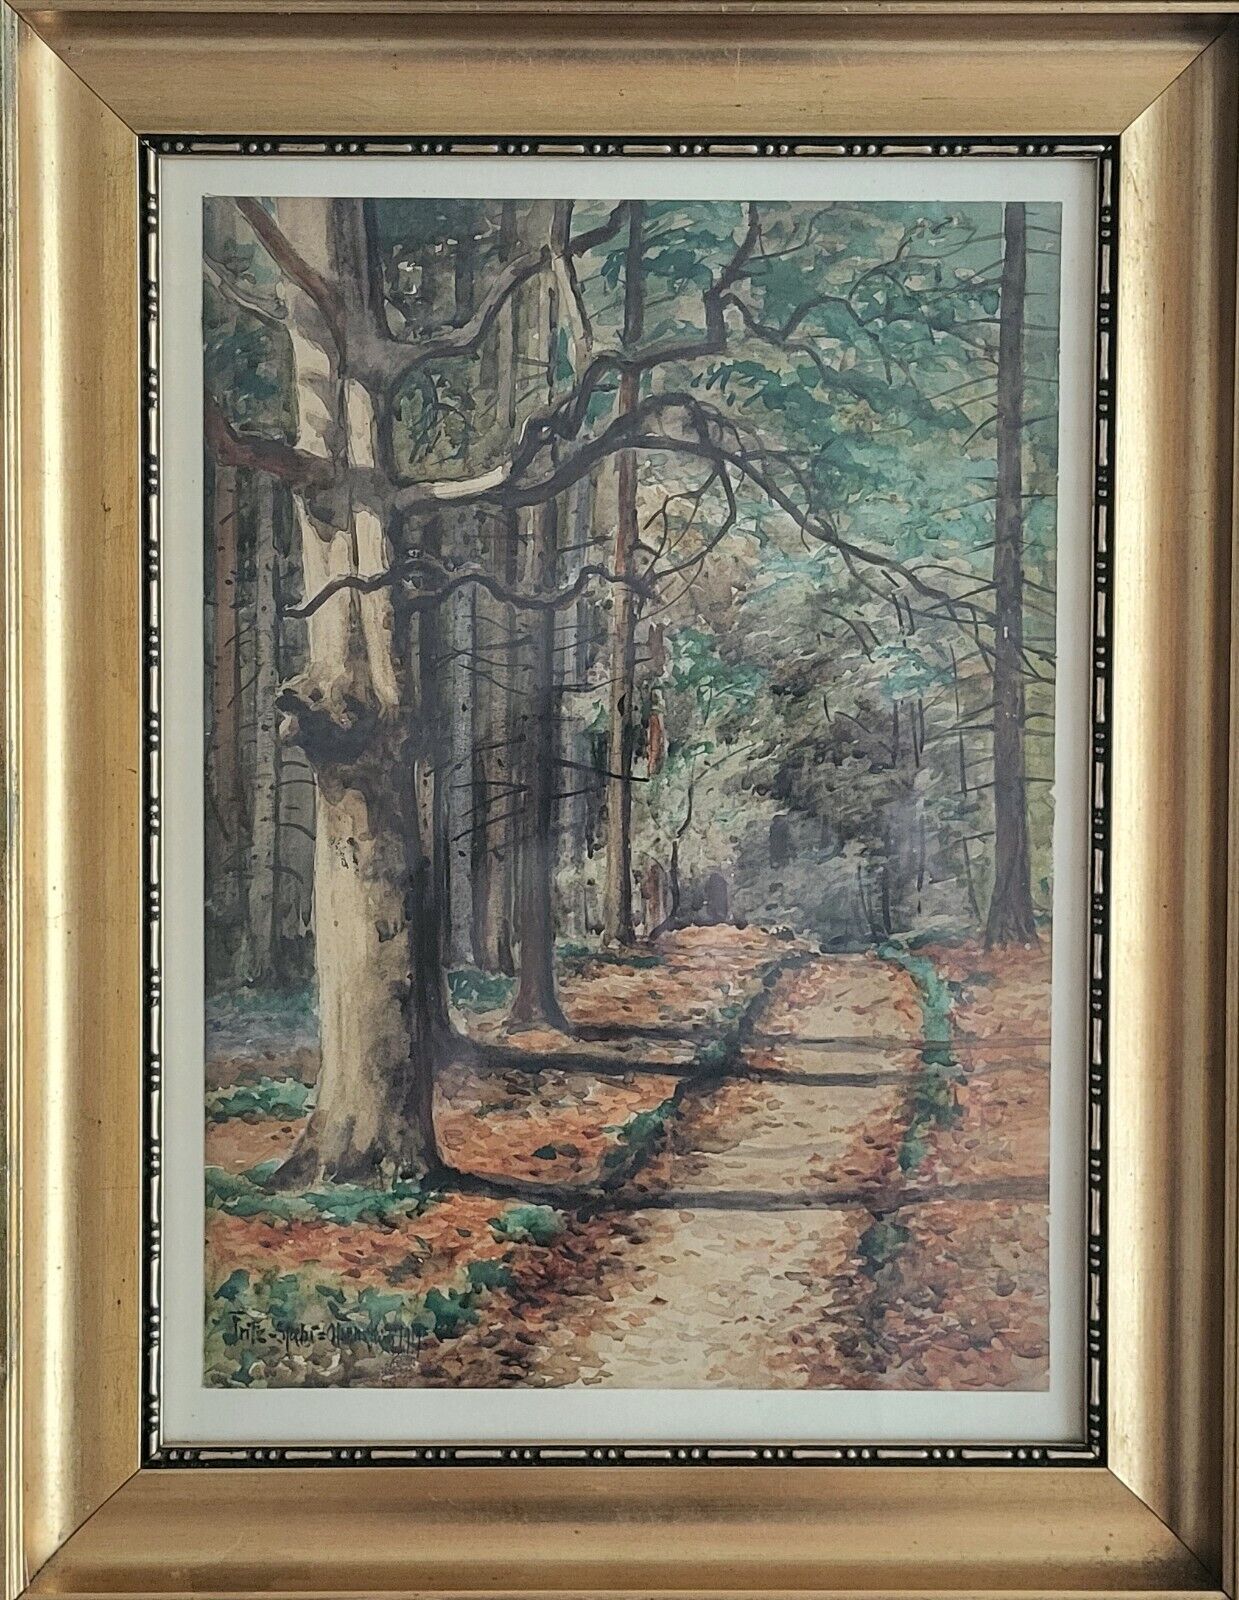 Antique watercolor Fritz Staehr-Olsen(1858-1922): ”Autumn trail” (1919)